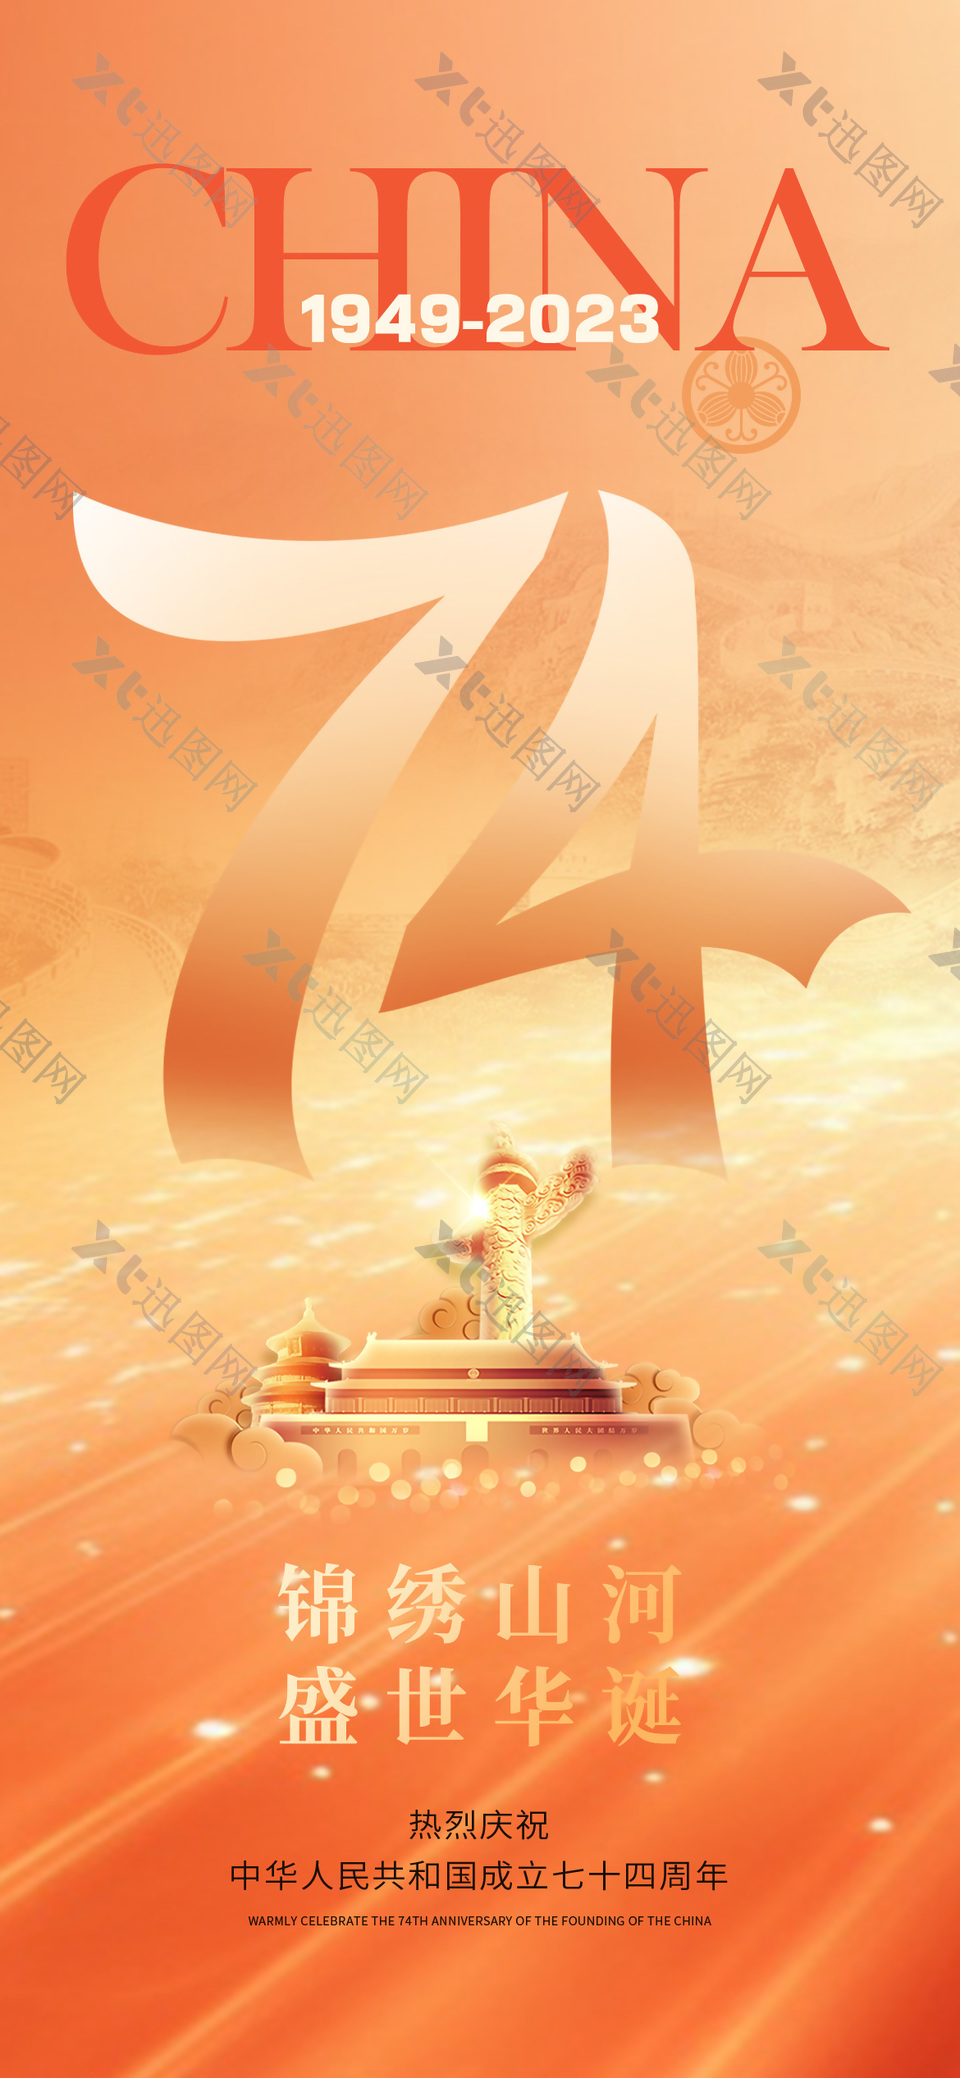 锦绣山河盛世华诞74周年庆典橙色大气海报